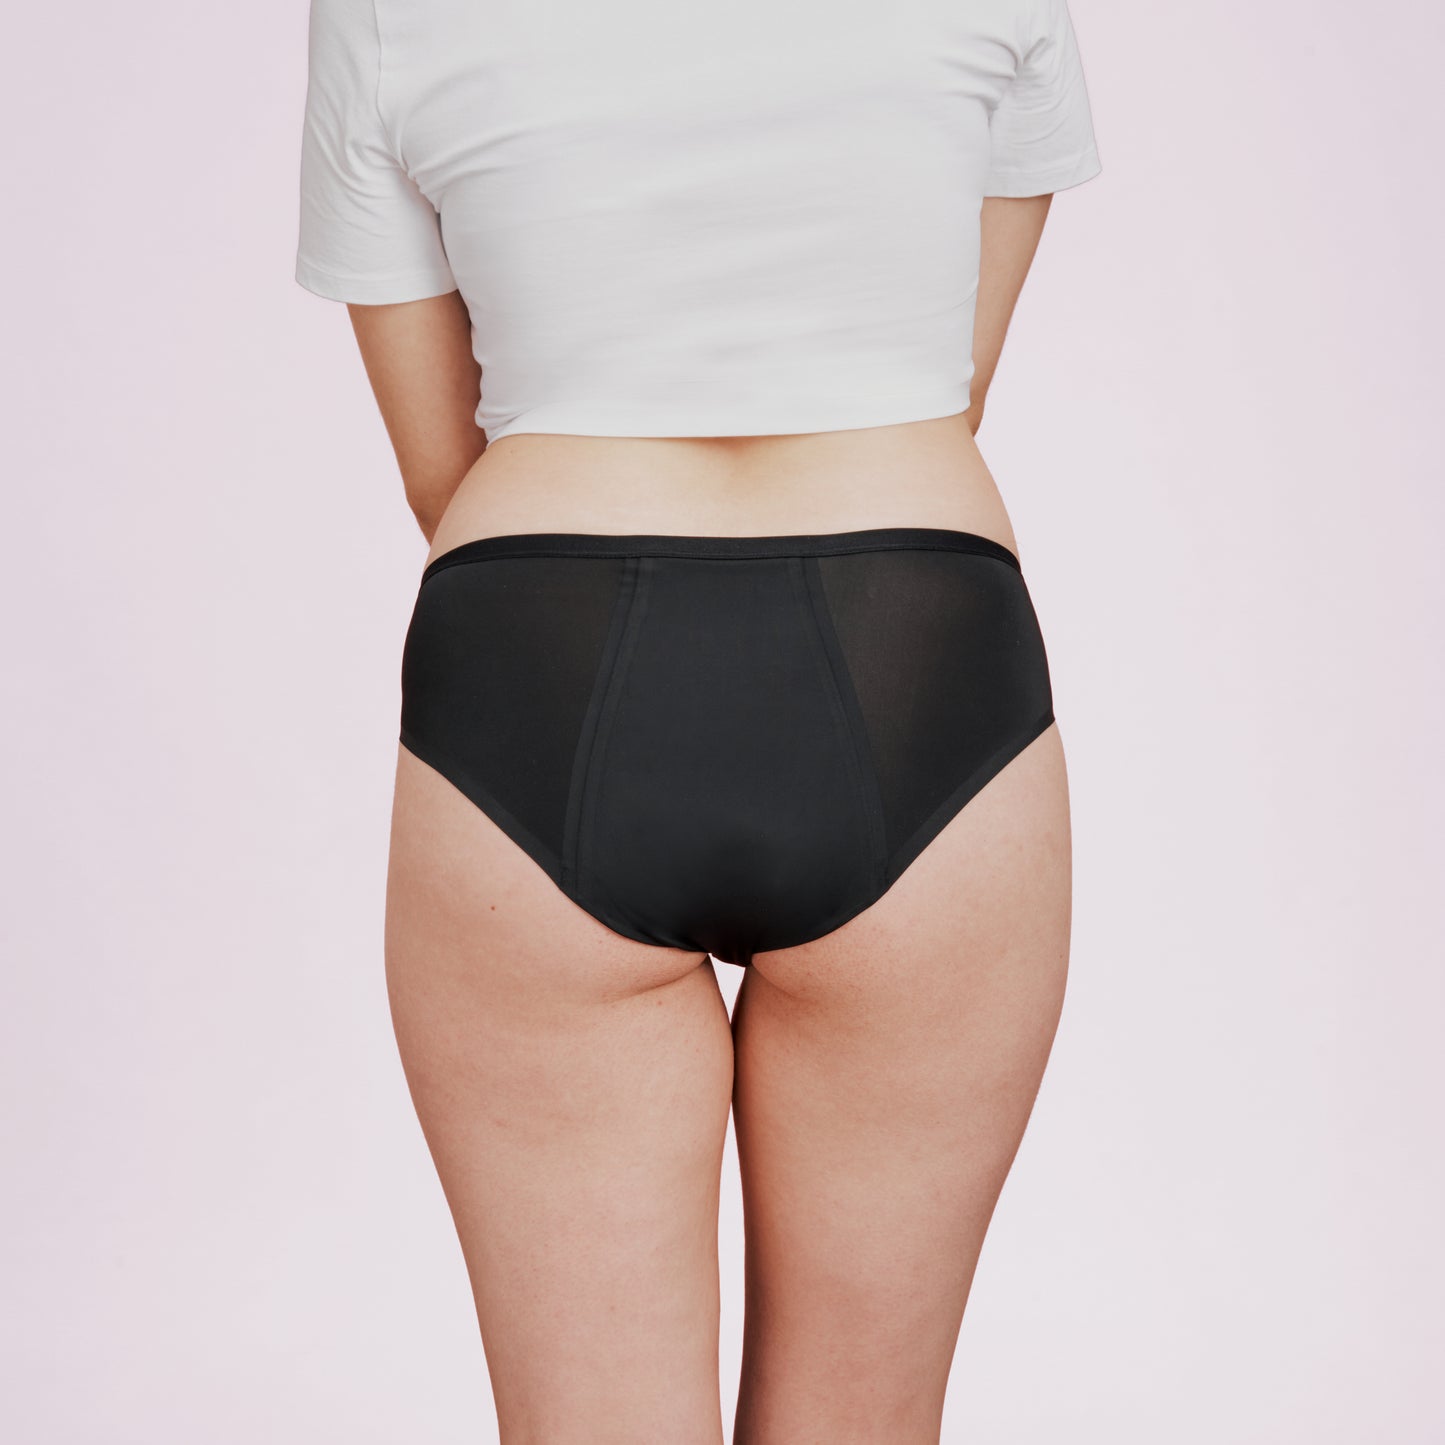 
                  
                    Menstruationsunterwäsche LUCA schwarz strong von hinten getragen seamless
                  
                